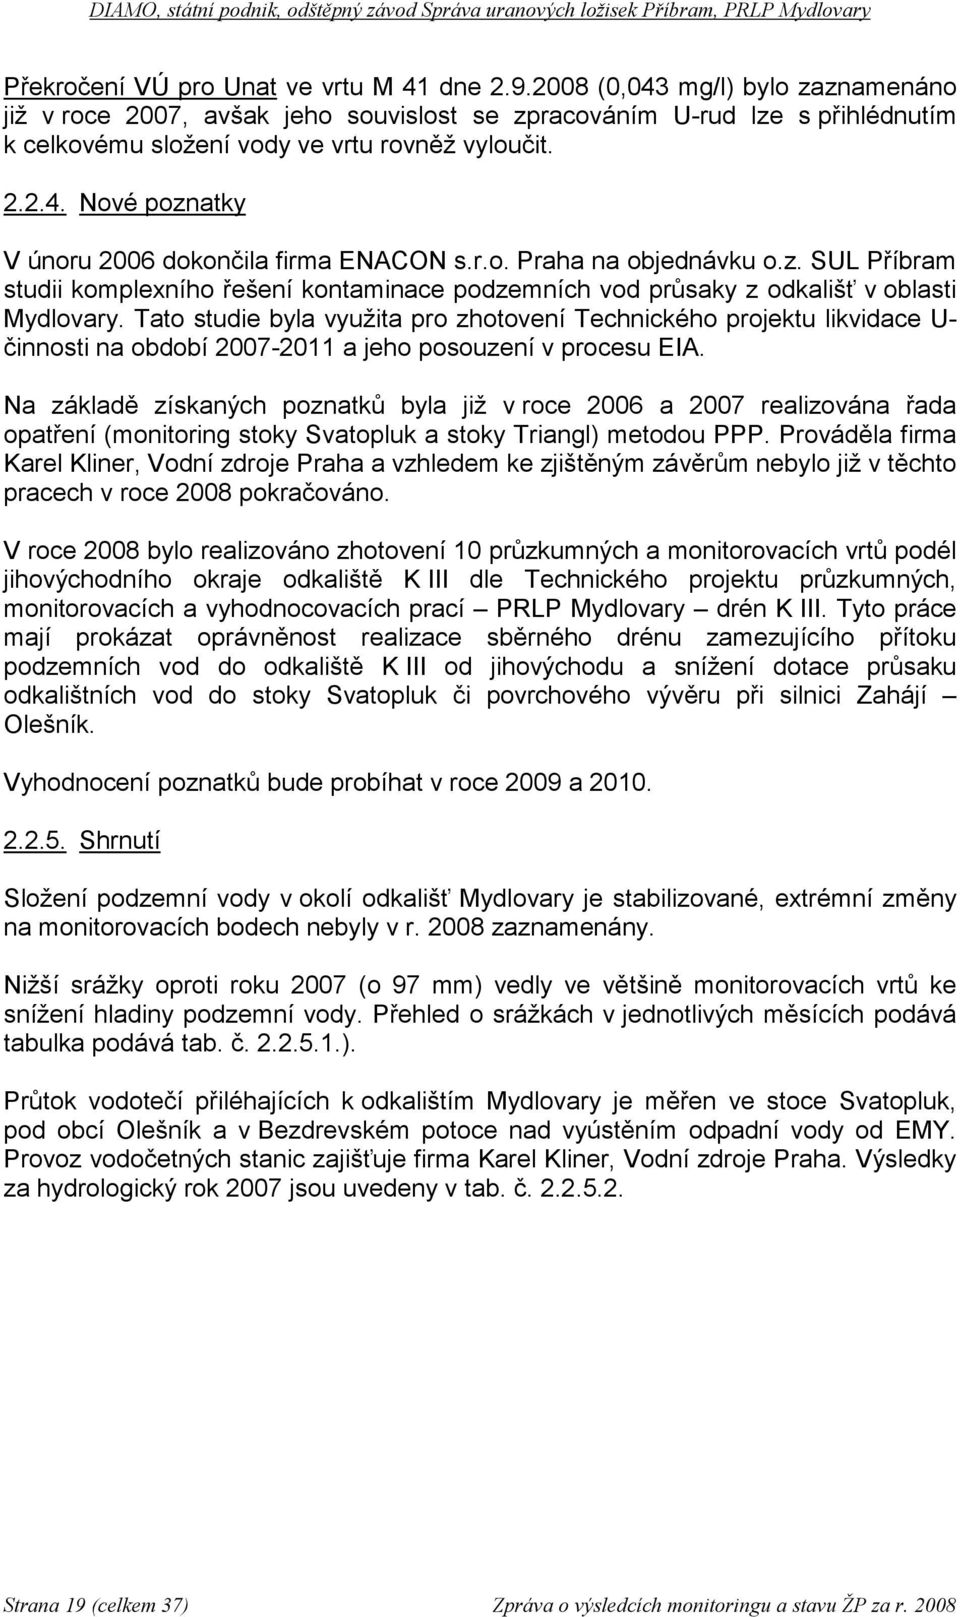 r.o. Praha na objednávku o.z. SUL Příbram studii komplexního řešení kontaminace podzemních vod průsaky z odkališť v oblasti Mydlovary.